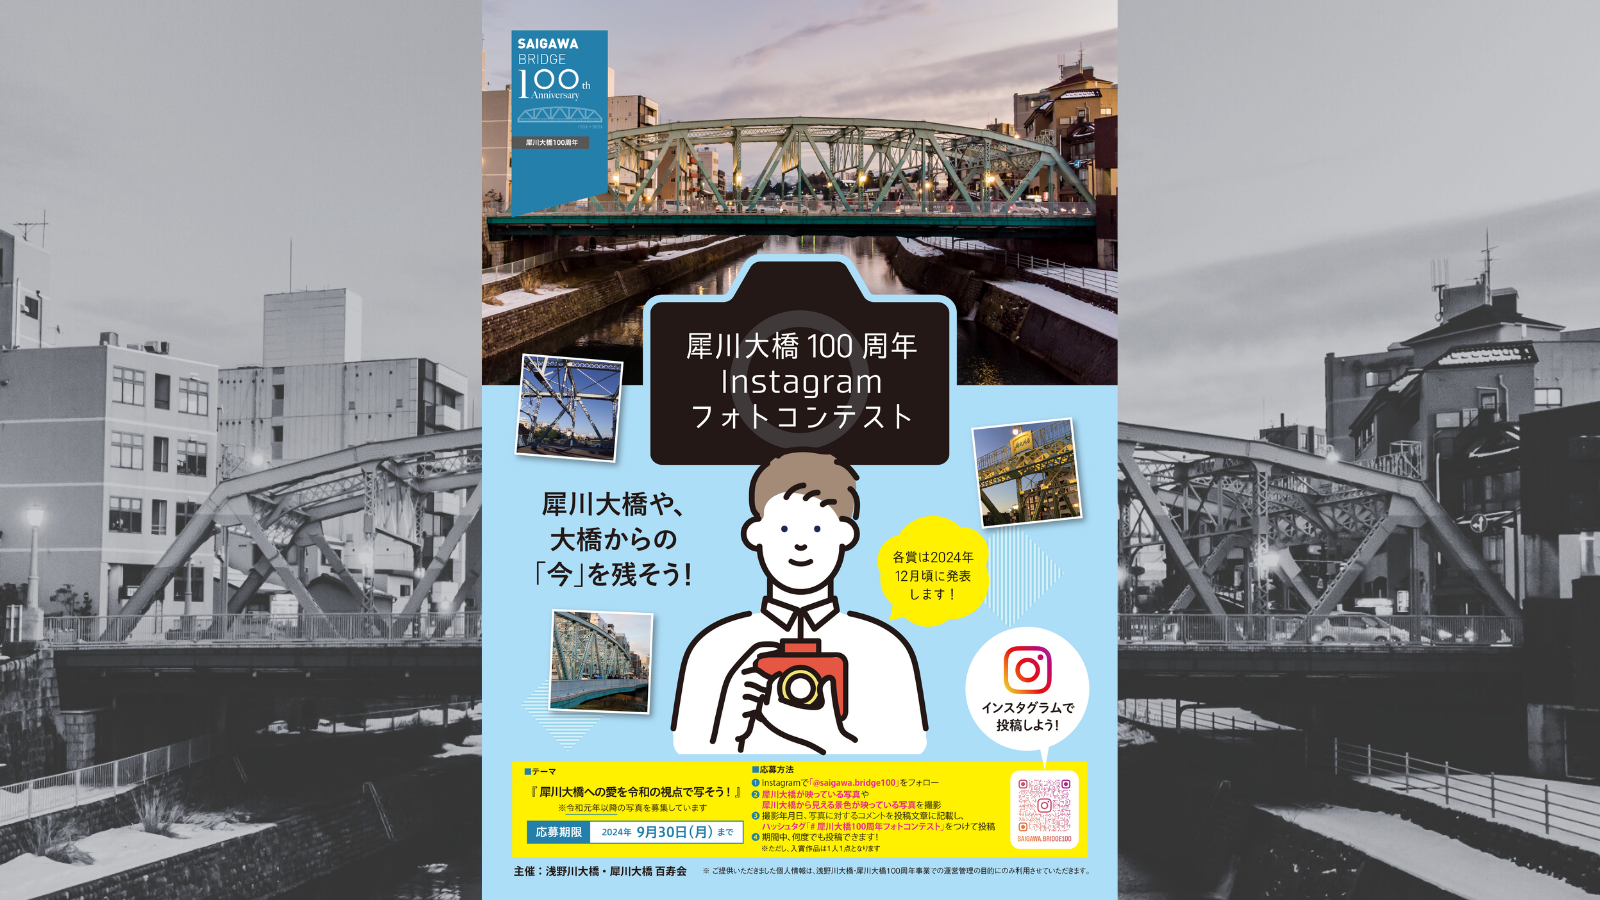 【~9/30(月)】犀川大橋100周年Instagramフォトコンテスト